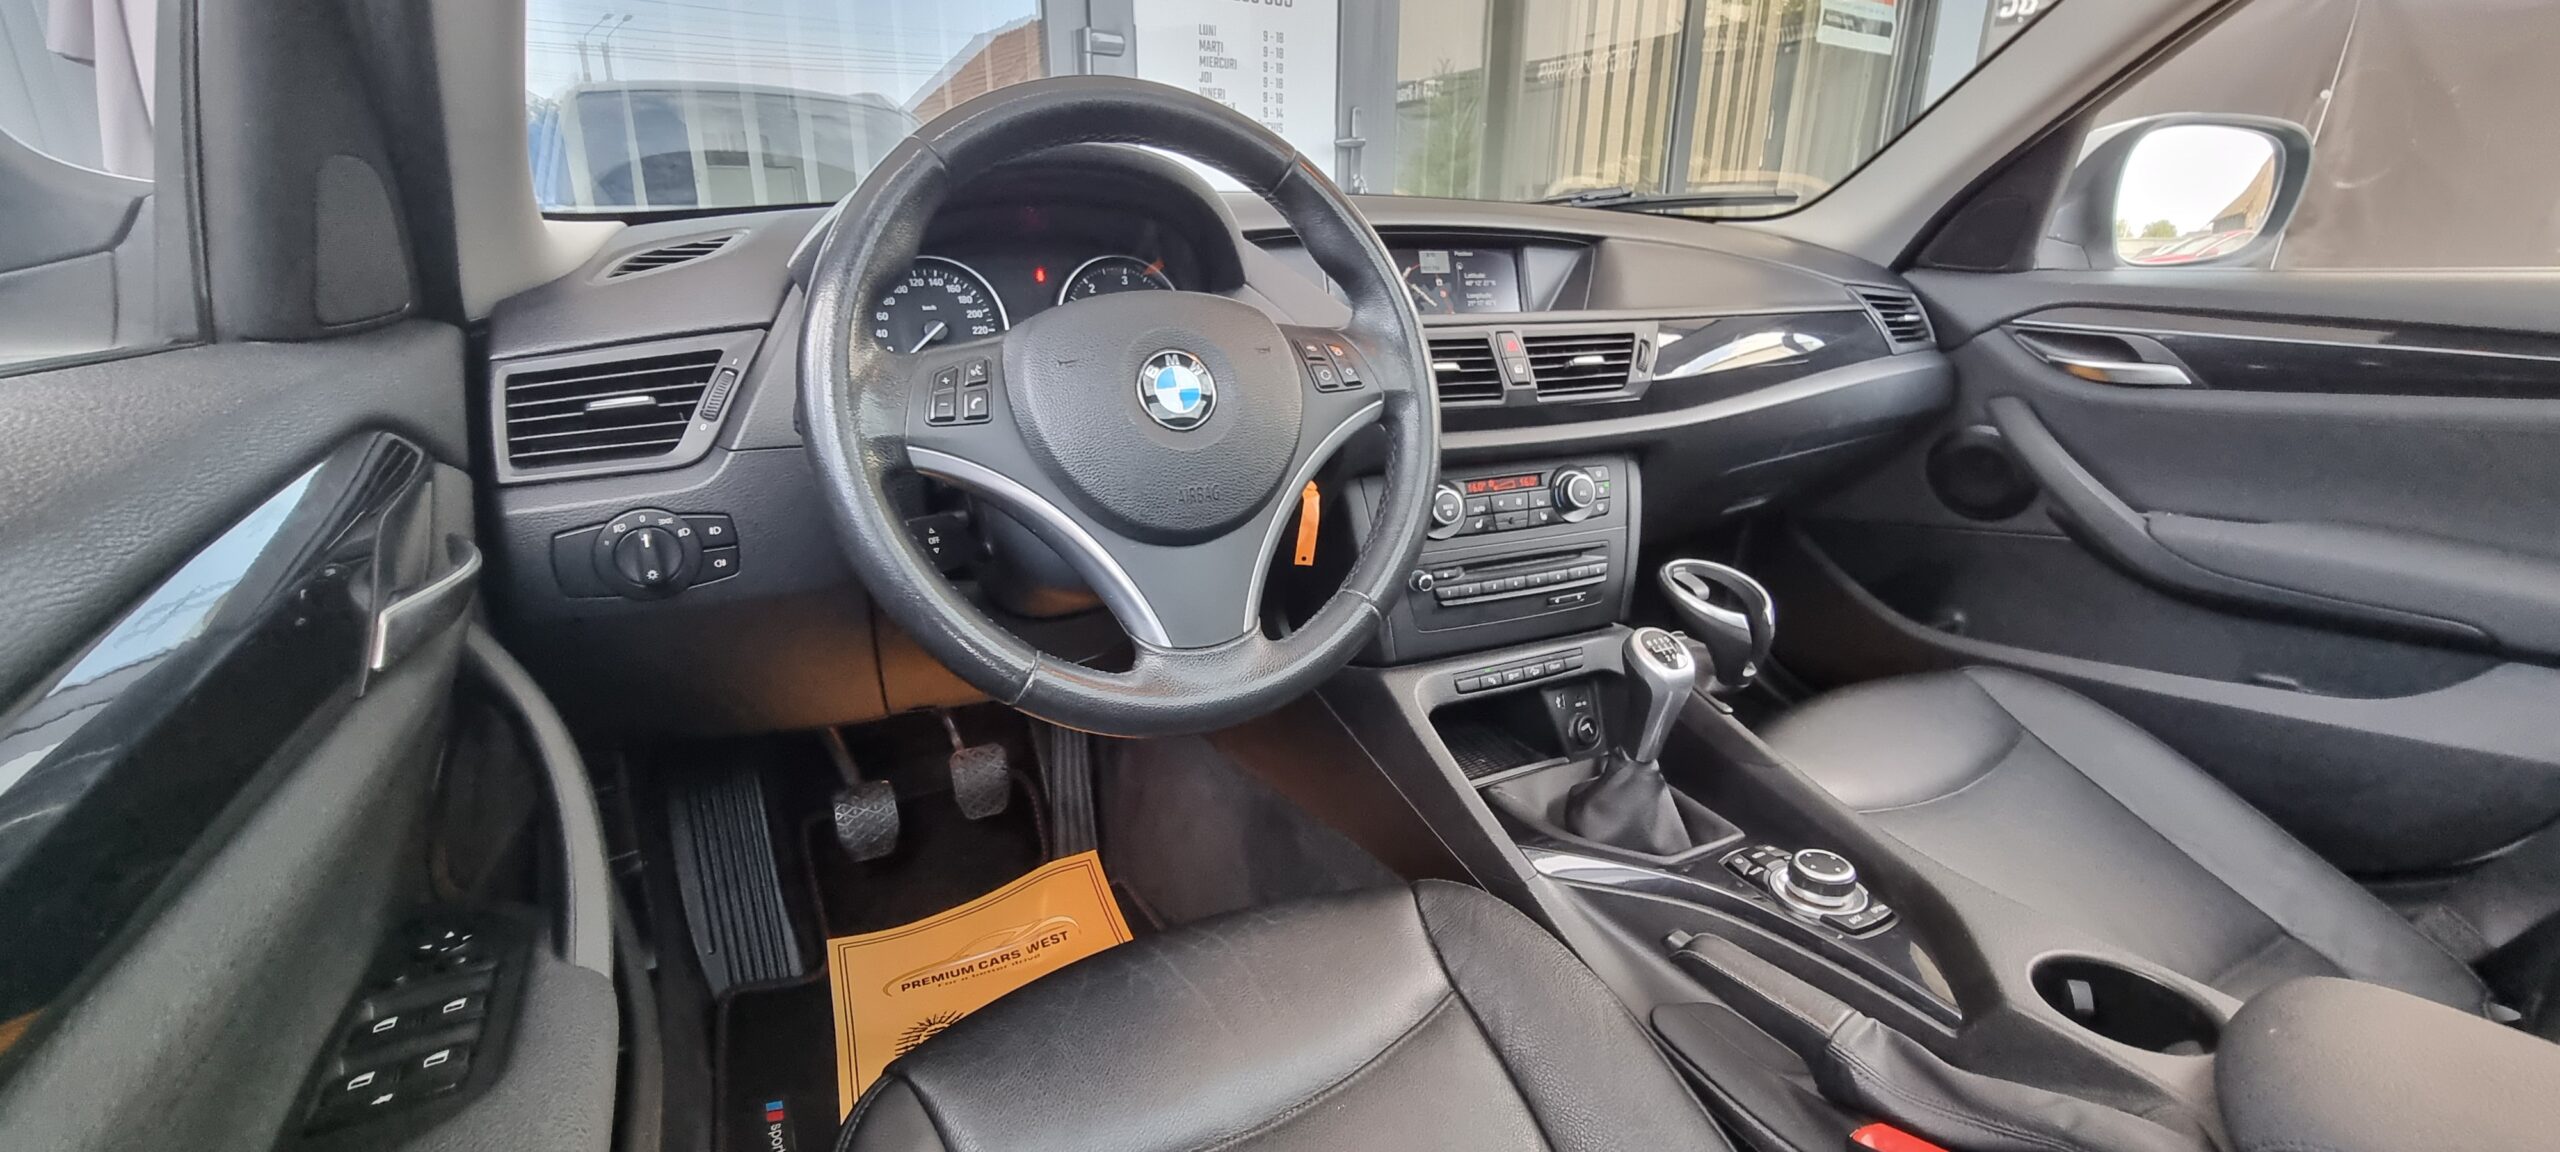 BMW X1(X DRIVE), 2.0 DIESEL,143 CP, EURO 5, AN 2011